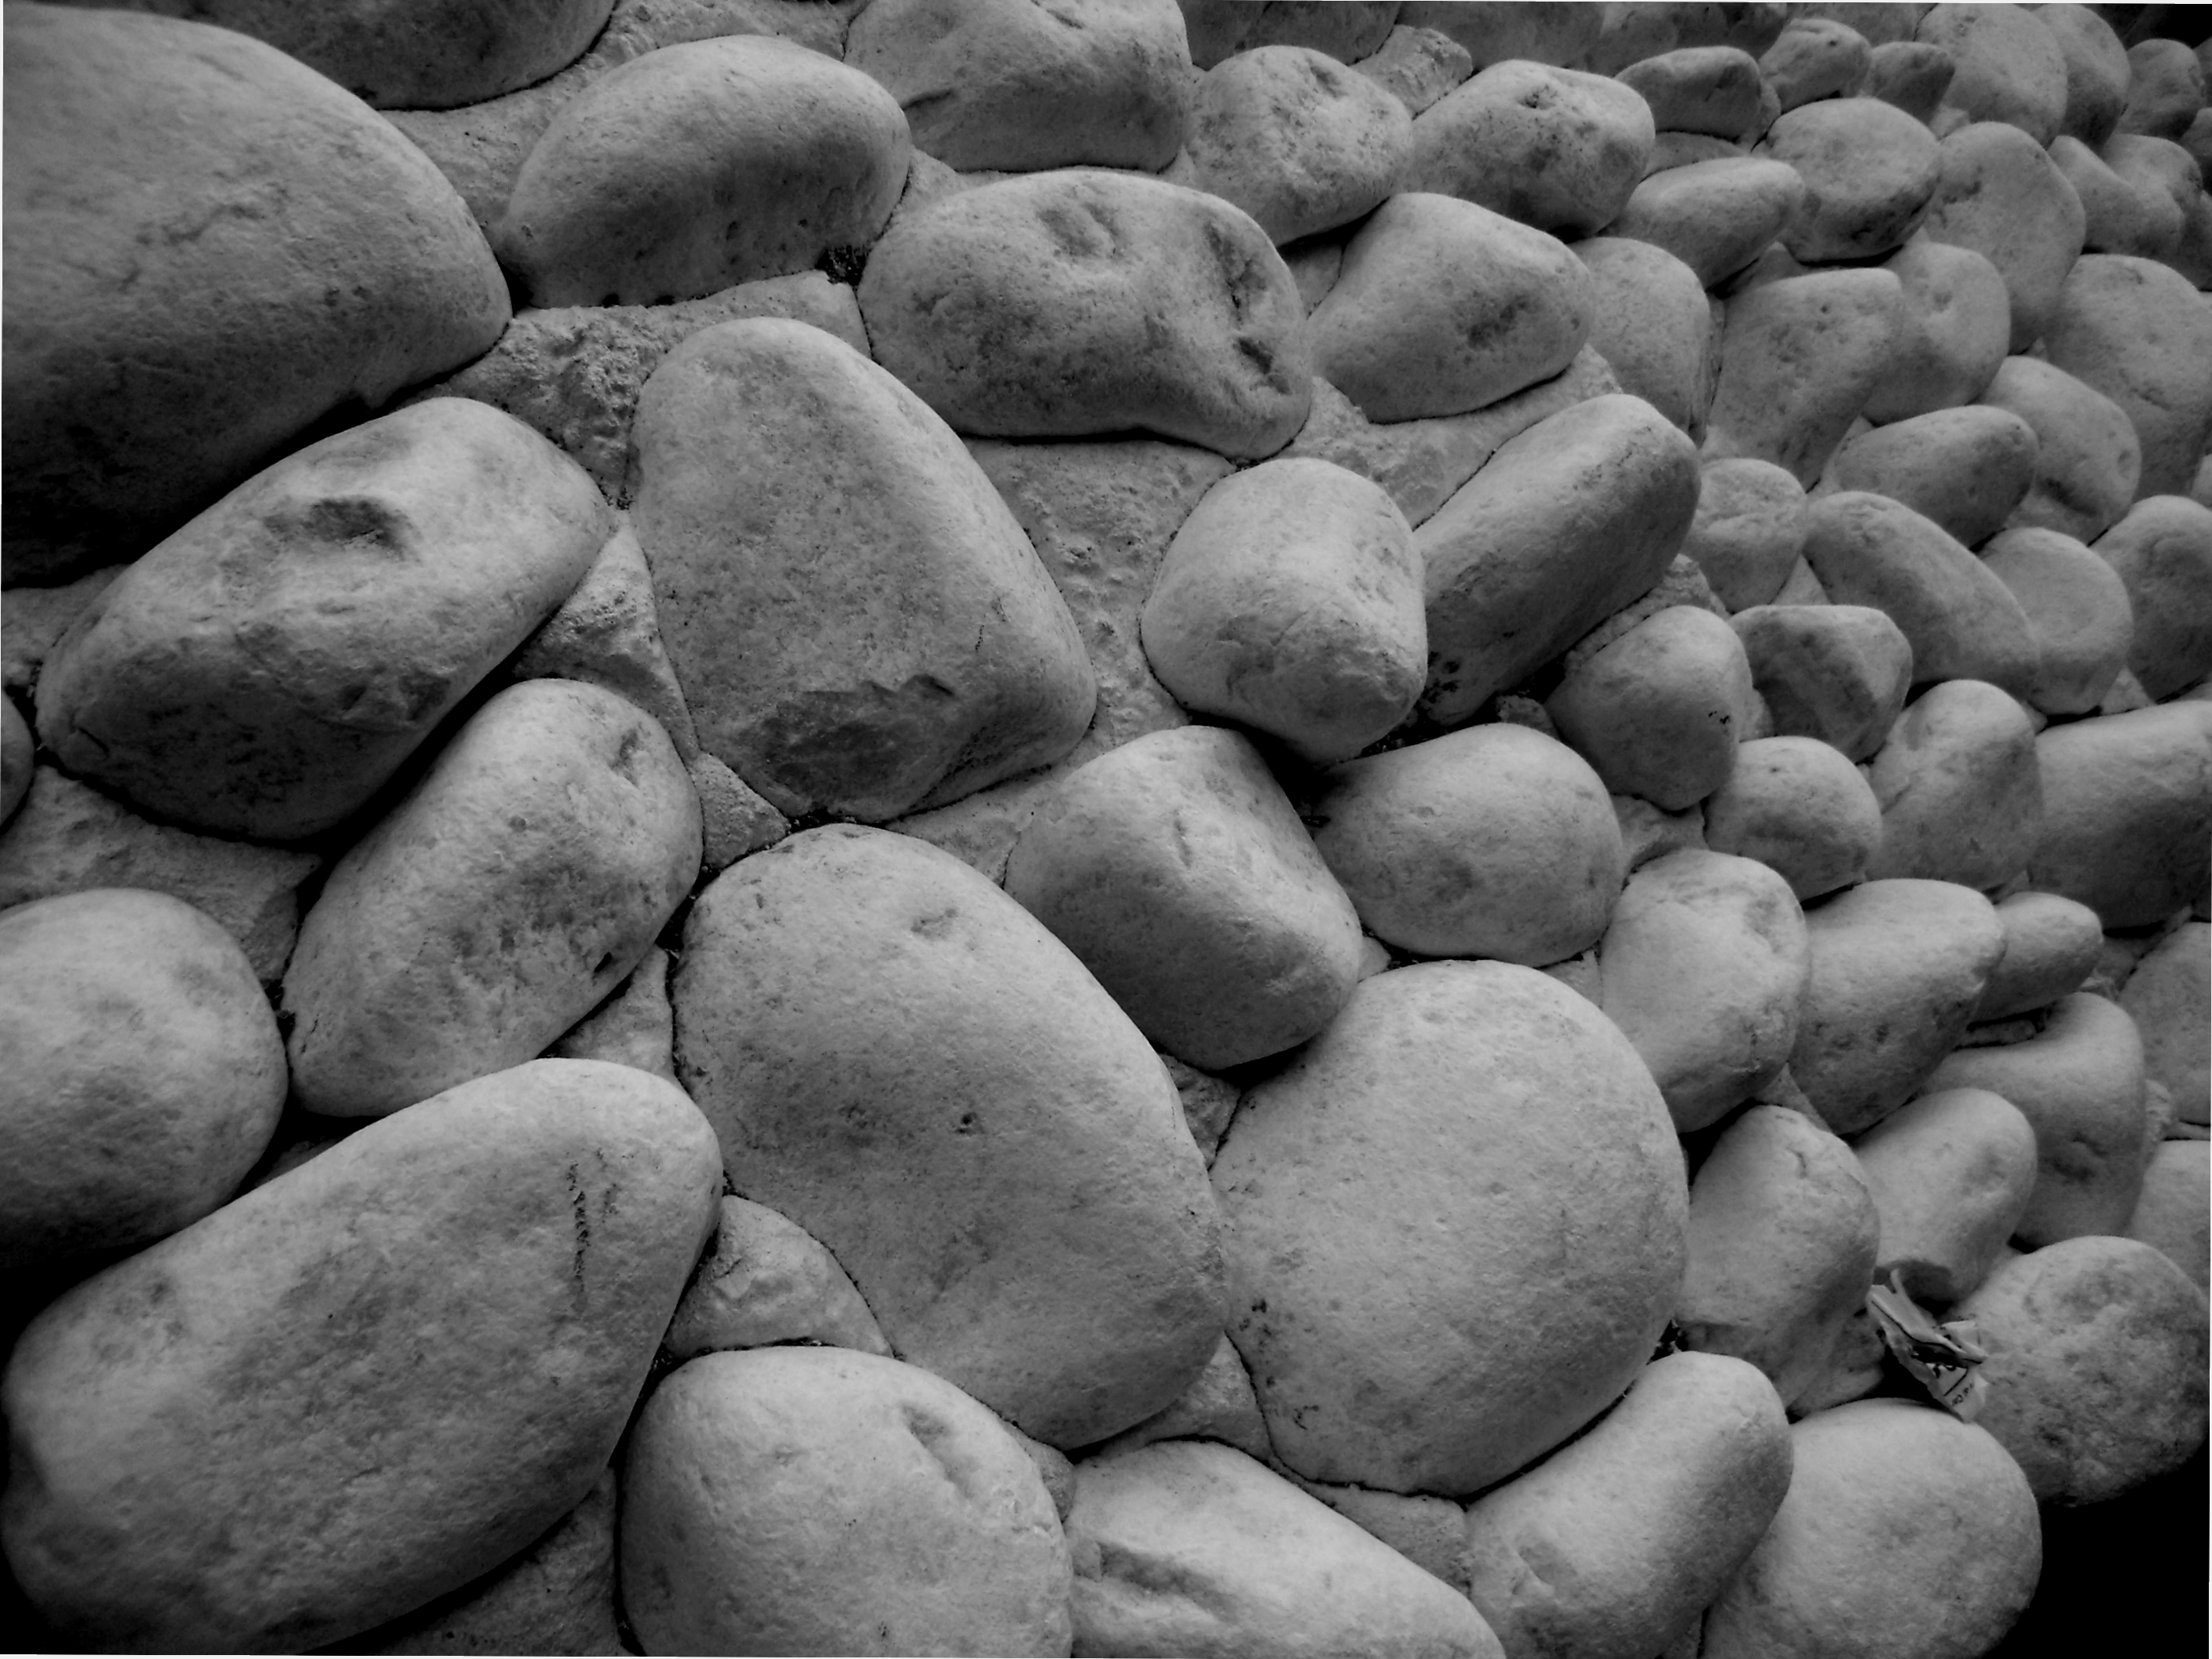 Selciato di pietre comodo come screensaver del pc | Flickr - Photo ...